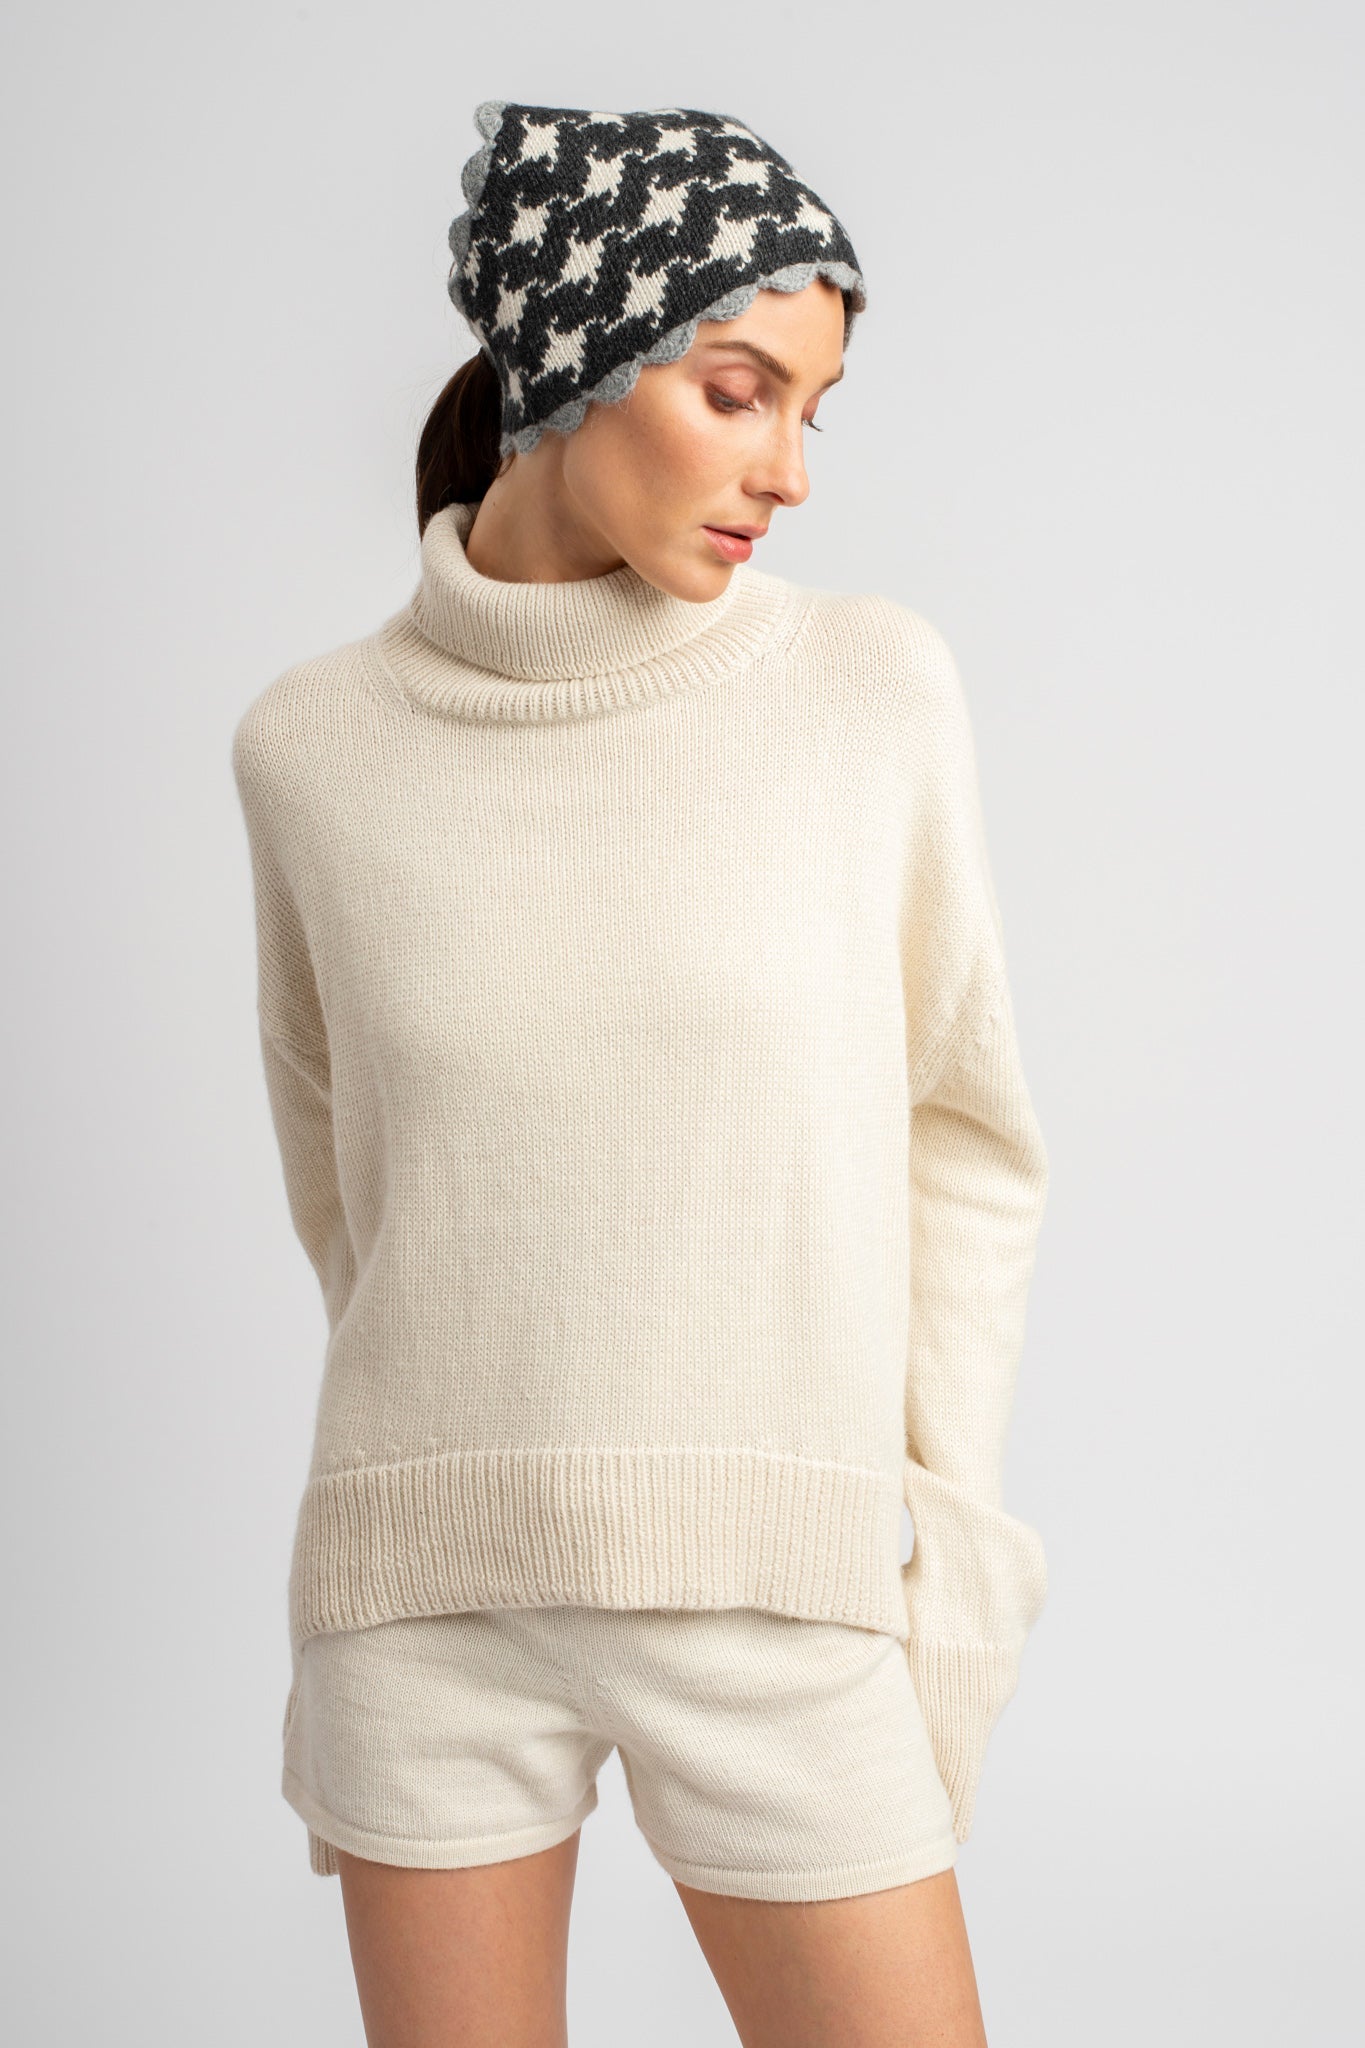 Model wearing turtleneck oversized sweater in white alpaca wool with headscarf